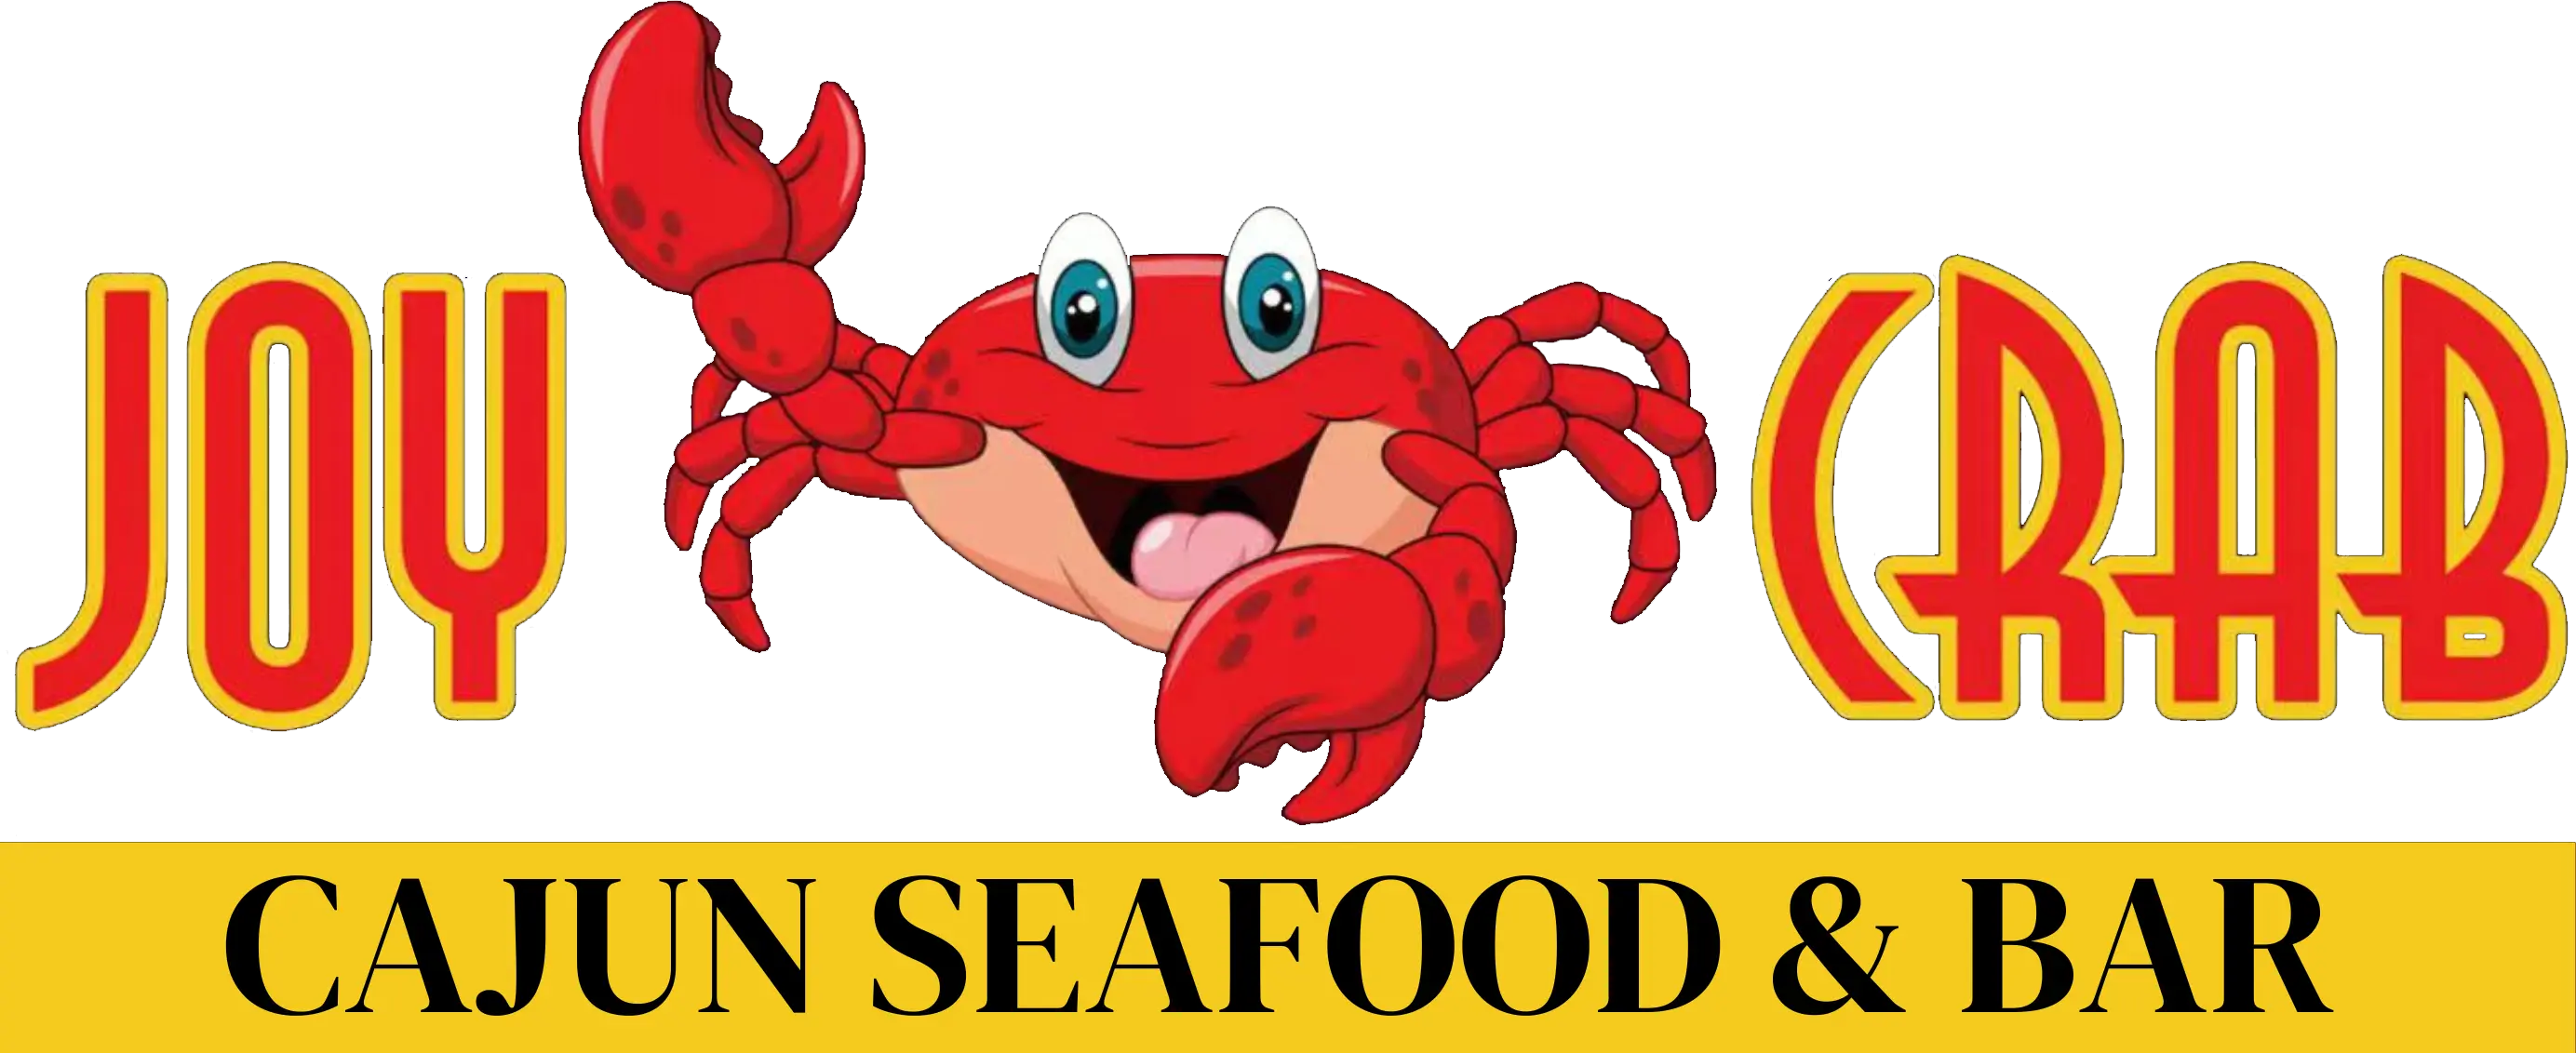 Joy Crab Cajun Seafood & Bar